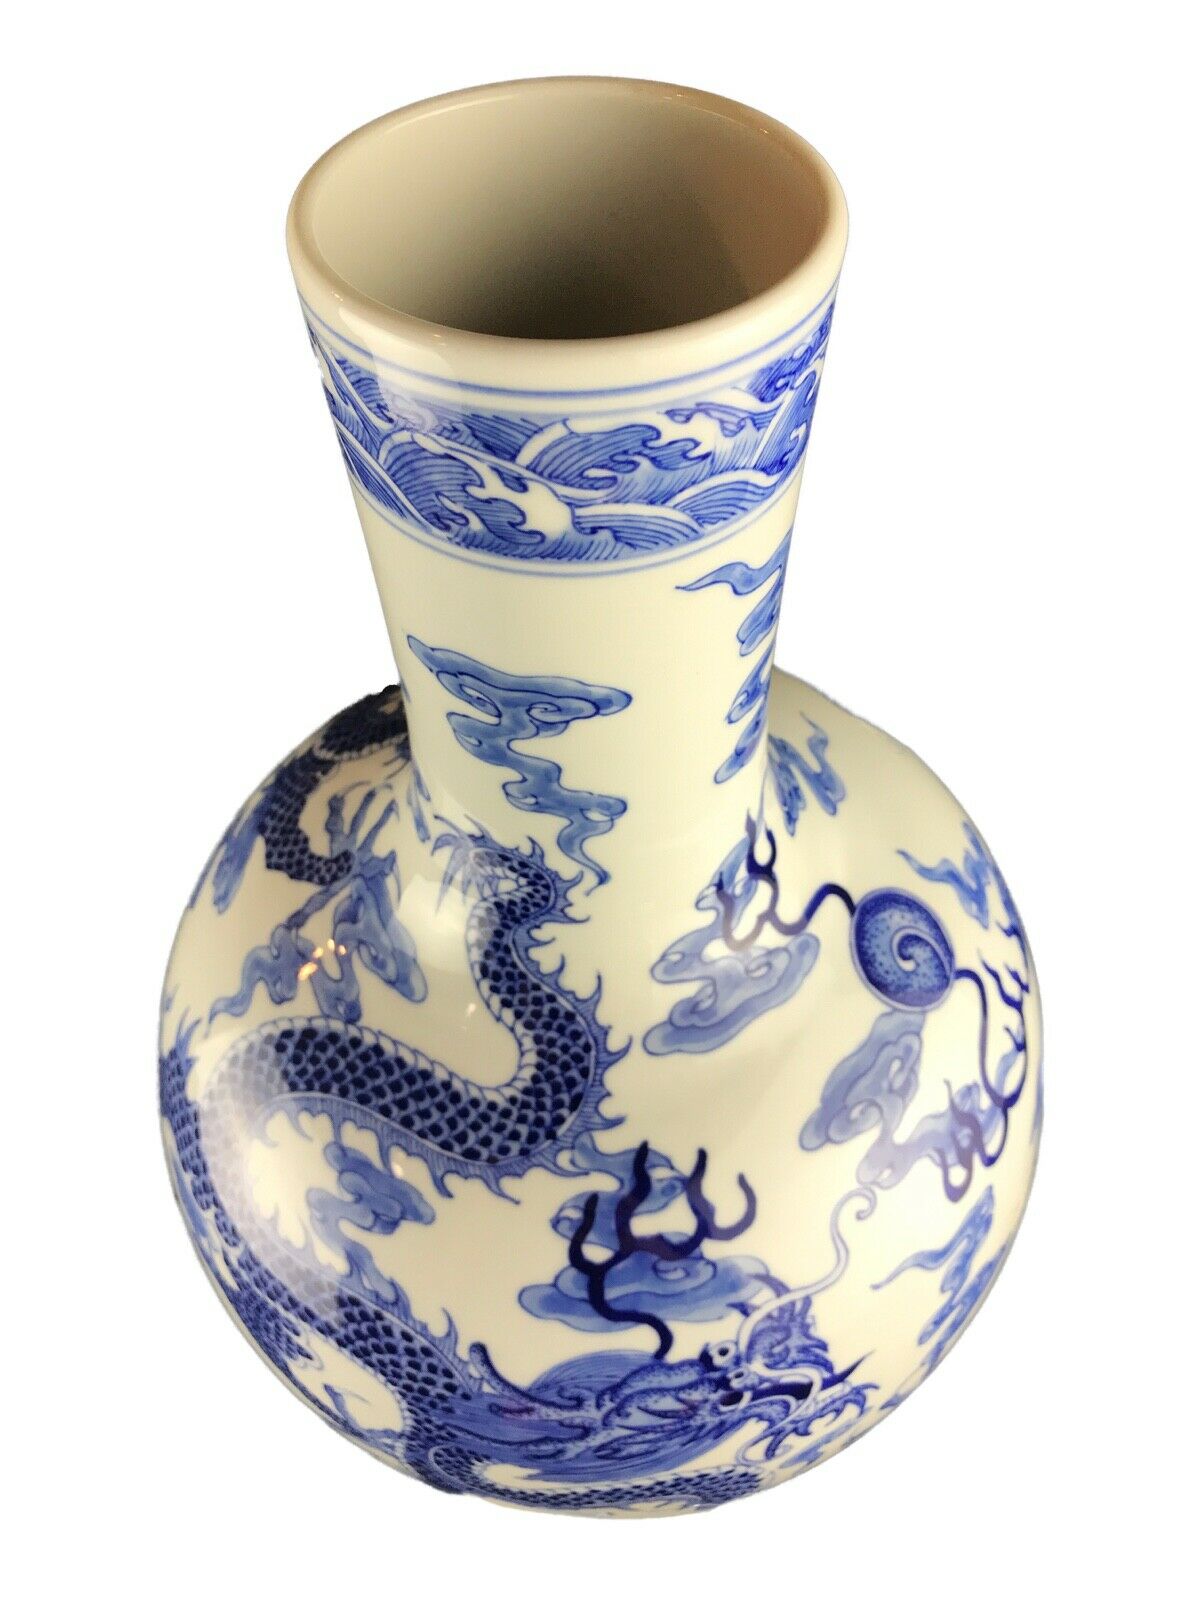 #2341 Chinoiserie Blue & White Porcelain Dragon Vase 15.25" H